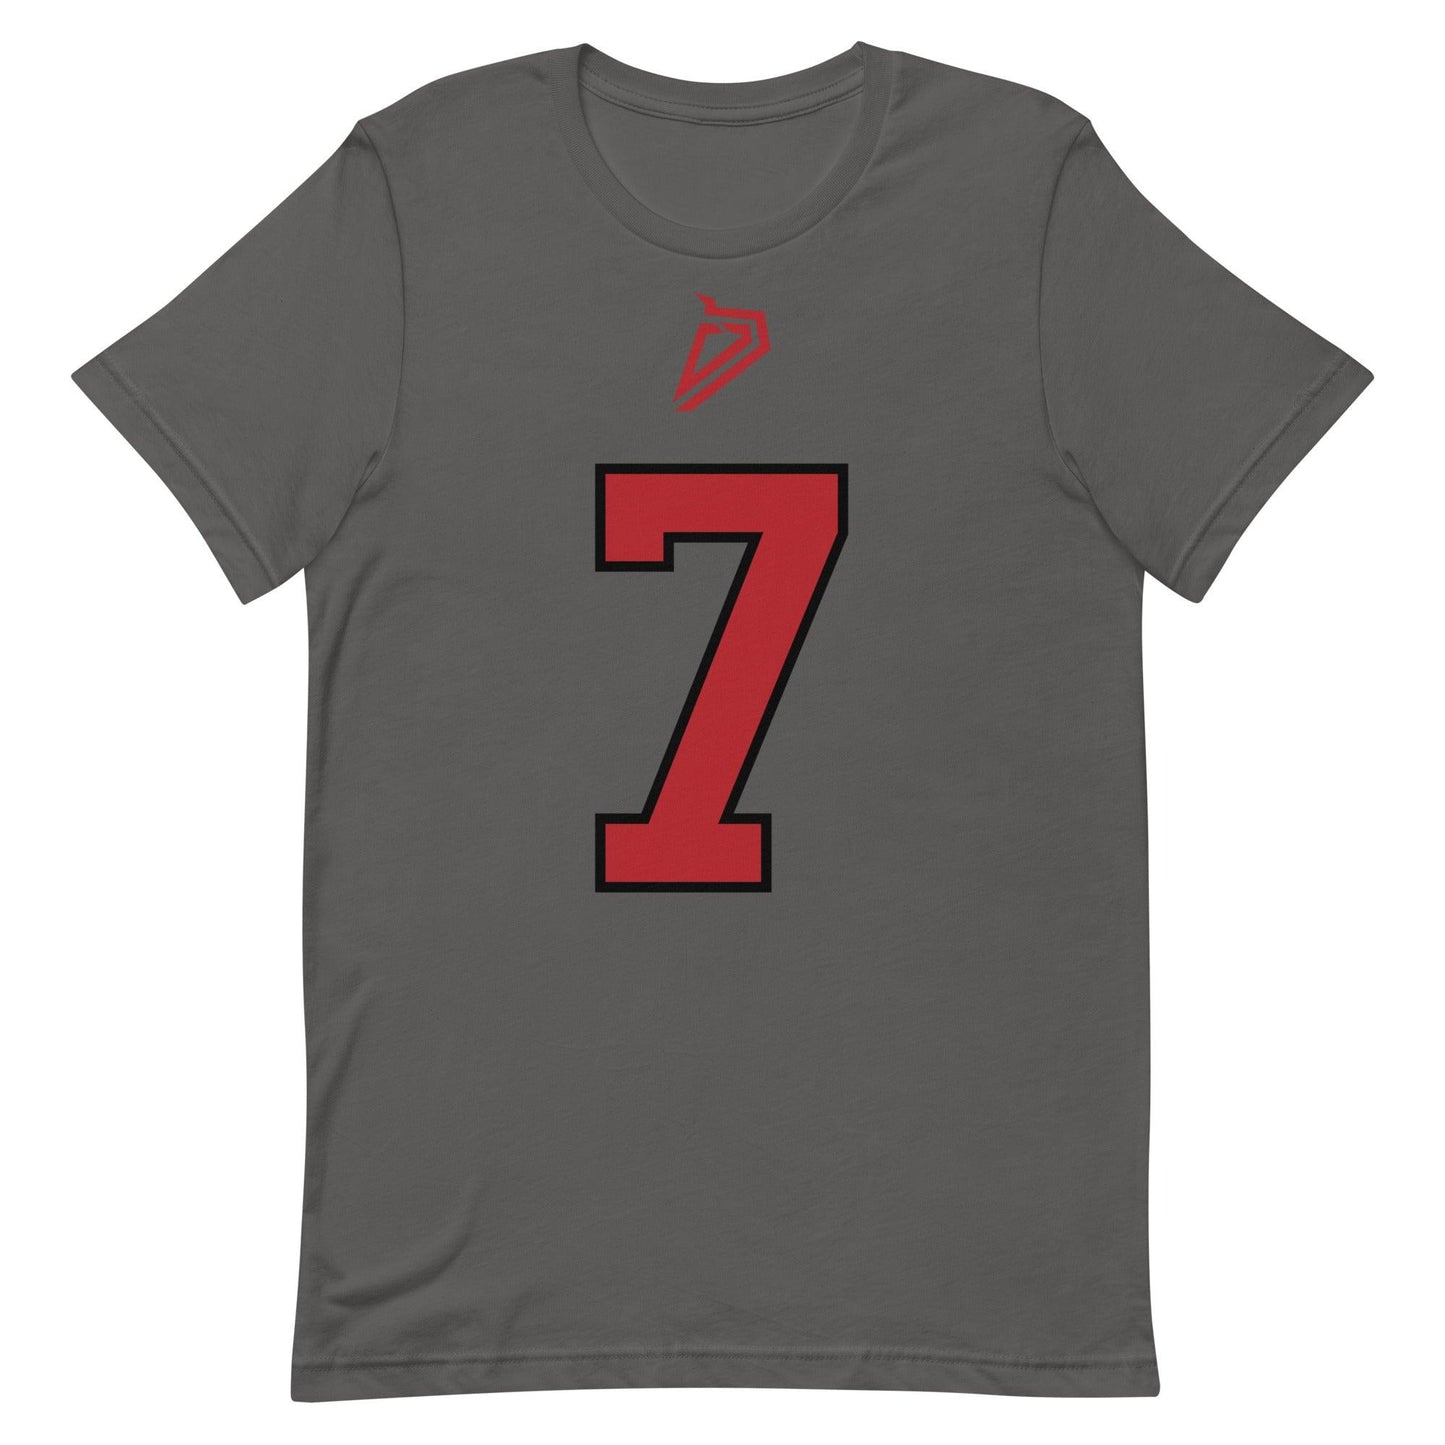 Daewood Davis "Jersey" t-shirt - Fan Arch